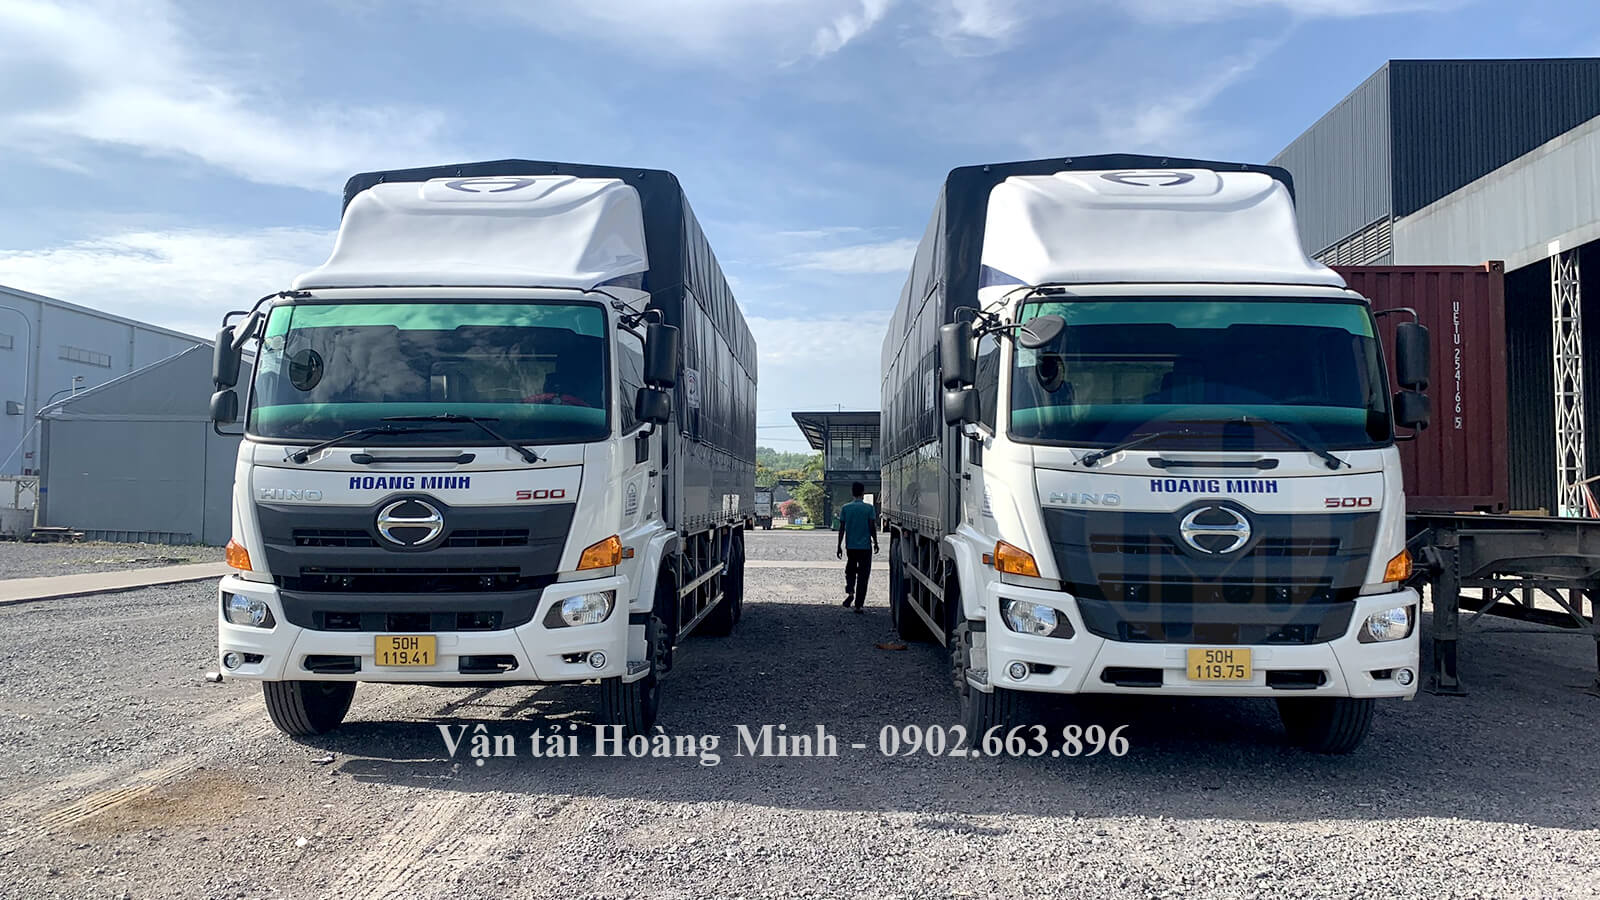 Dịch vụ Cho thuê xe tải chở hàng quận 6 Vận tải Hoàng Minh.jpg